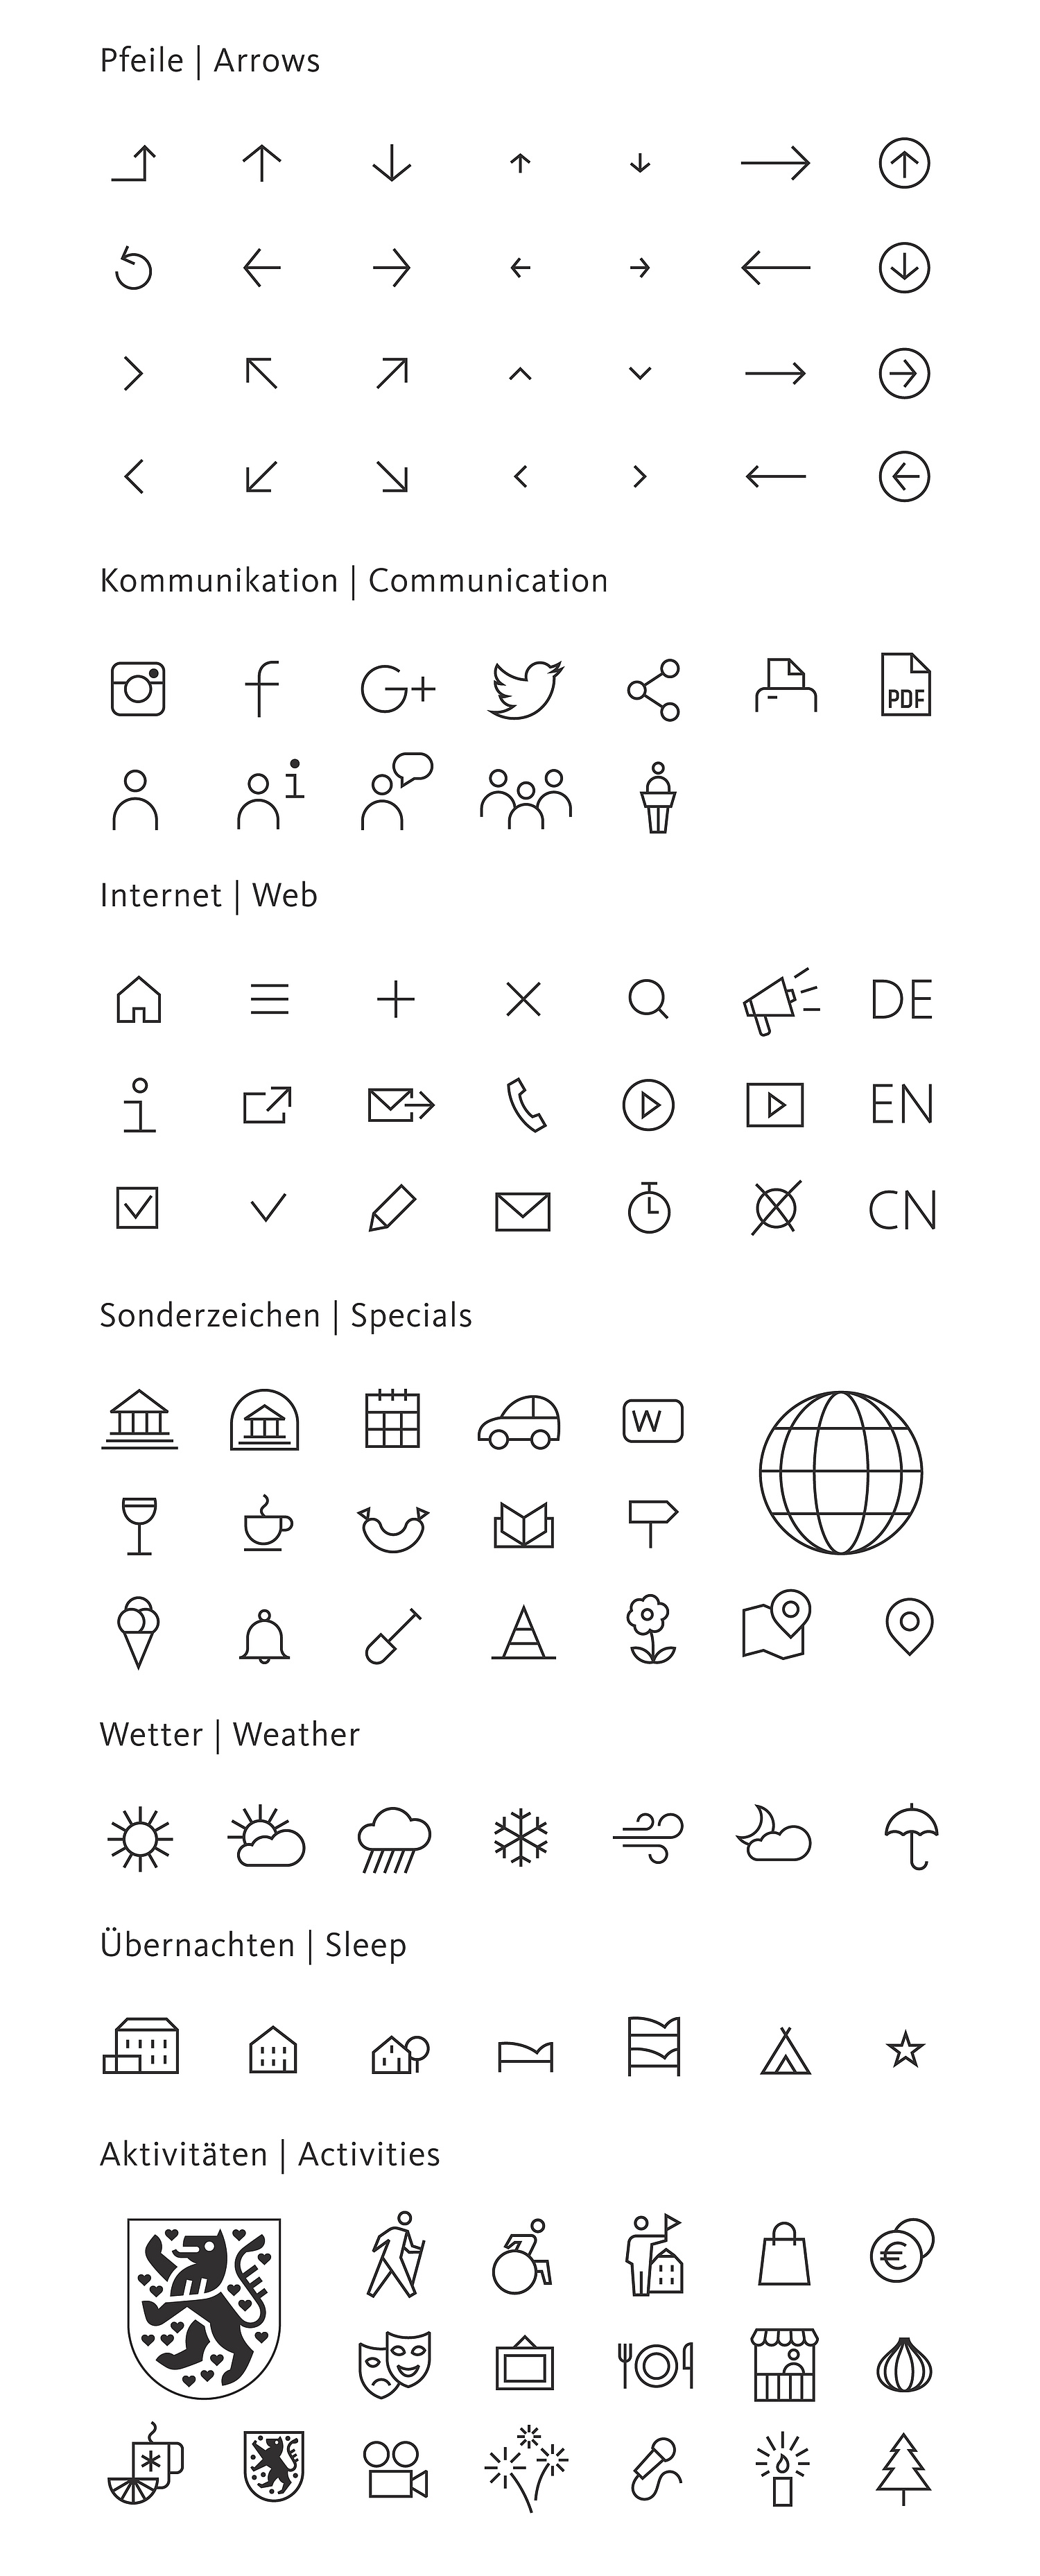 Für die Website entstand eine umfangreiche und individuell auf die Stadt Weimar zugeschnittene Iconbibliothek. Die Icons können in Teaserboxen und auf einzelnen Inhaltsseiten eingefügt werden. (© Papenfuss | Atelier)